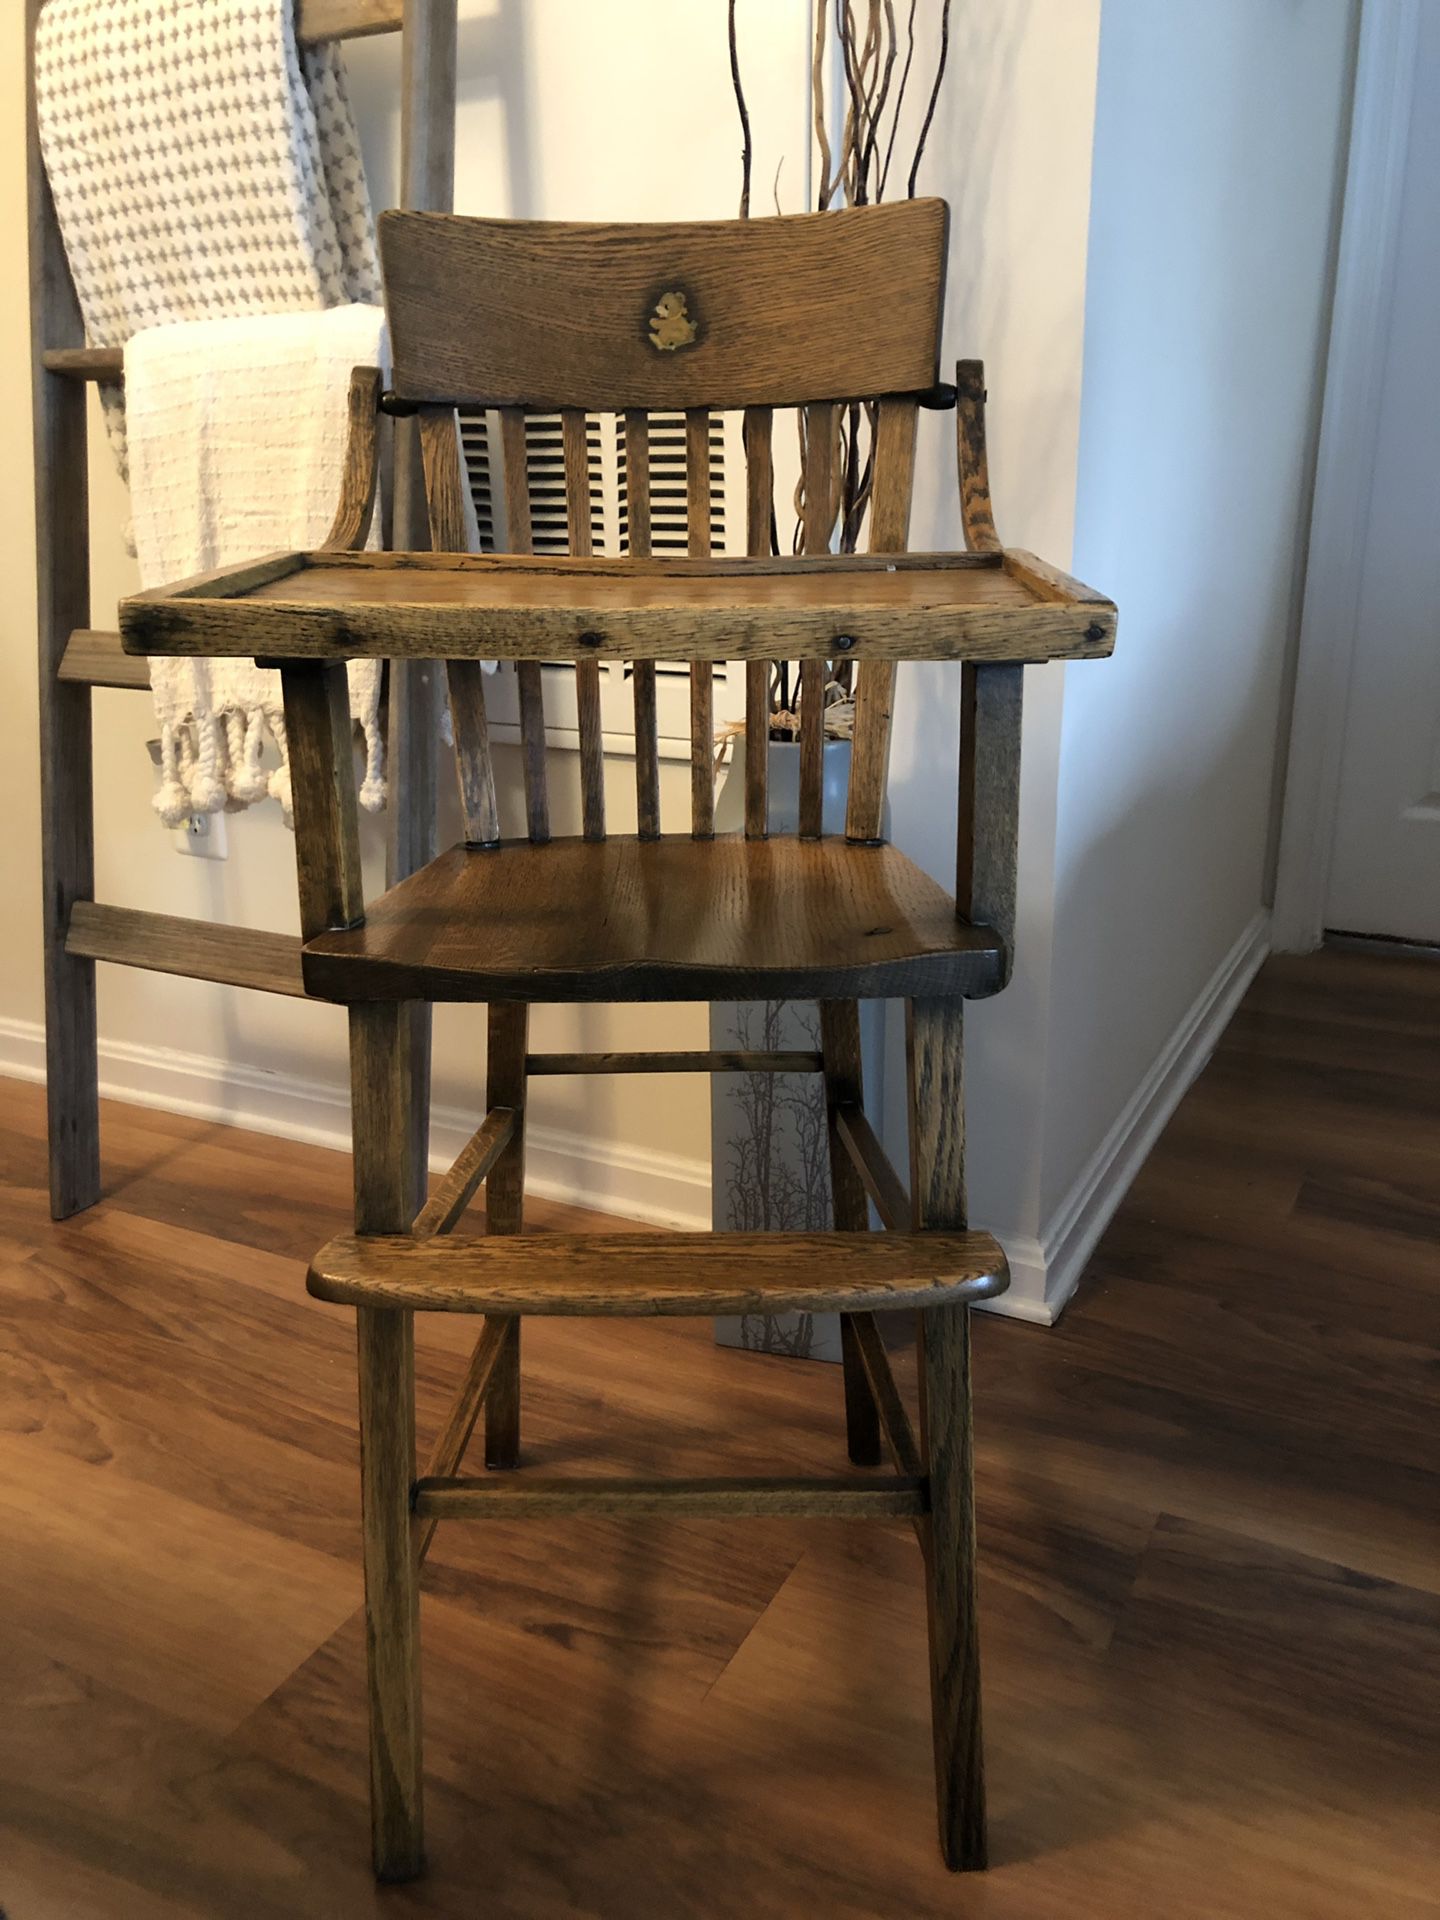 Antique High Chair “39”Inches Tall